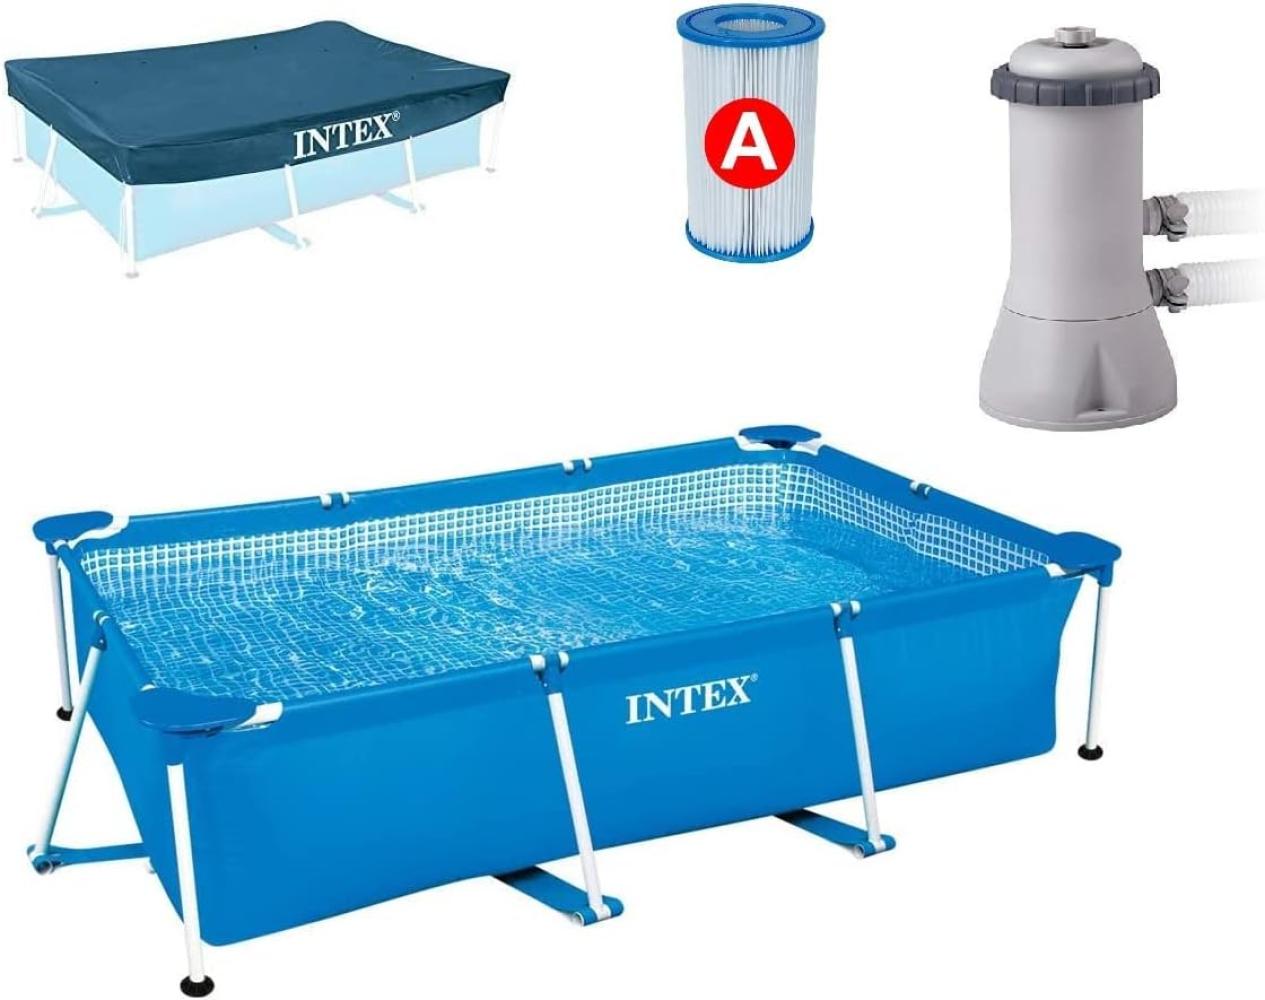 Intex Rectangular Frame Pool Set - Aufstellpool - 300 x 200 x 75 cm, Blau - Filterpumpe, Ersatzfilter und Abdeckplane Bild 1